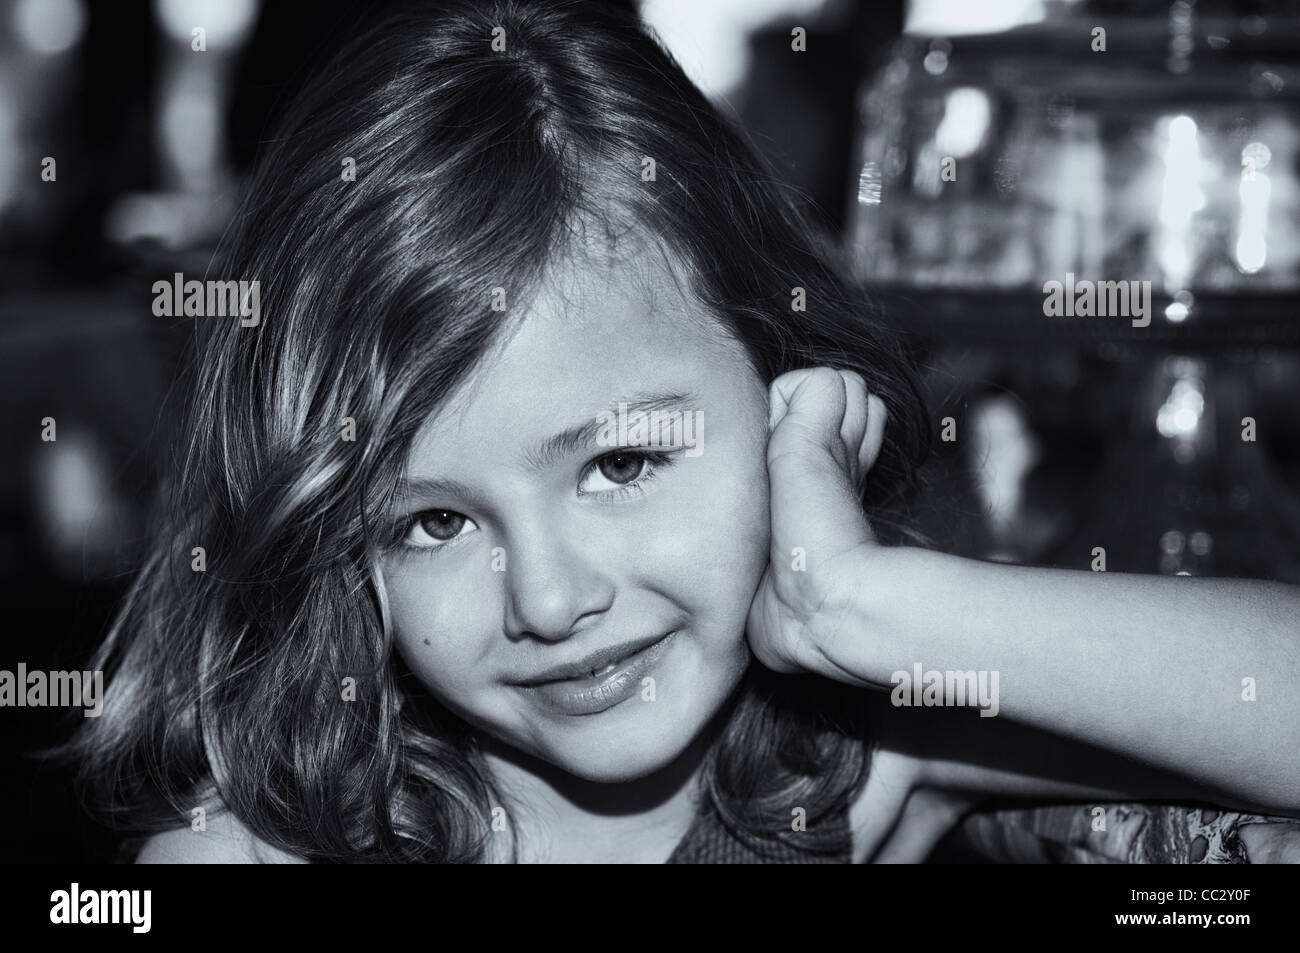 Hermosa Niña 5-6 Años. Fotos, retratos, imágenes y fotografía de